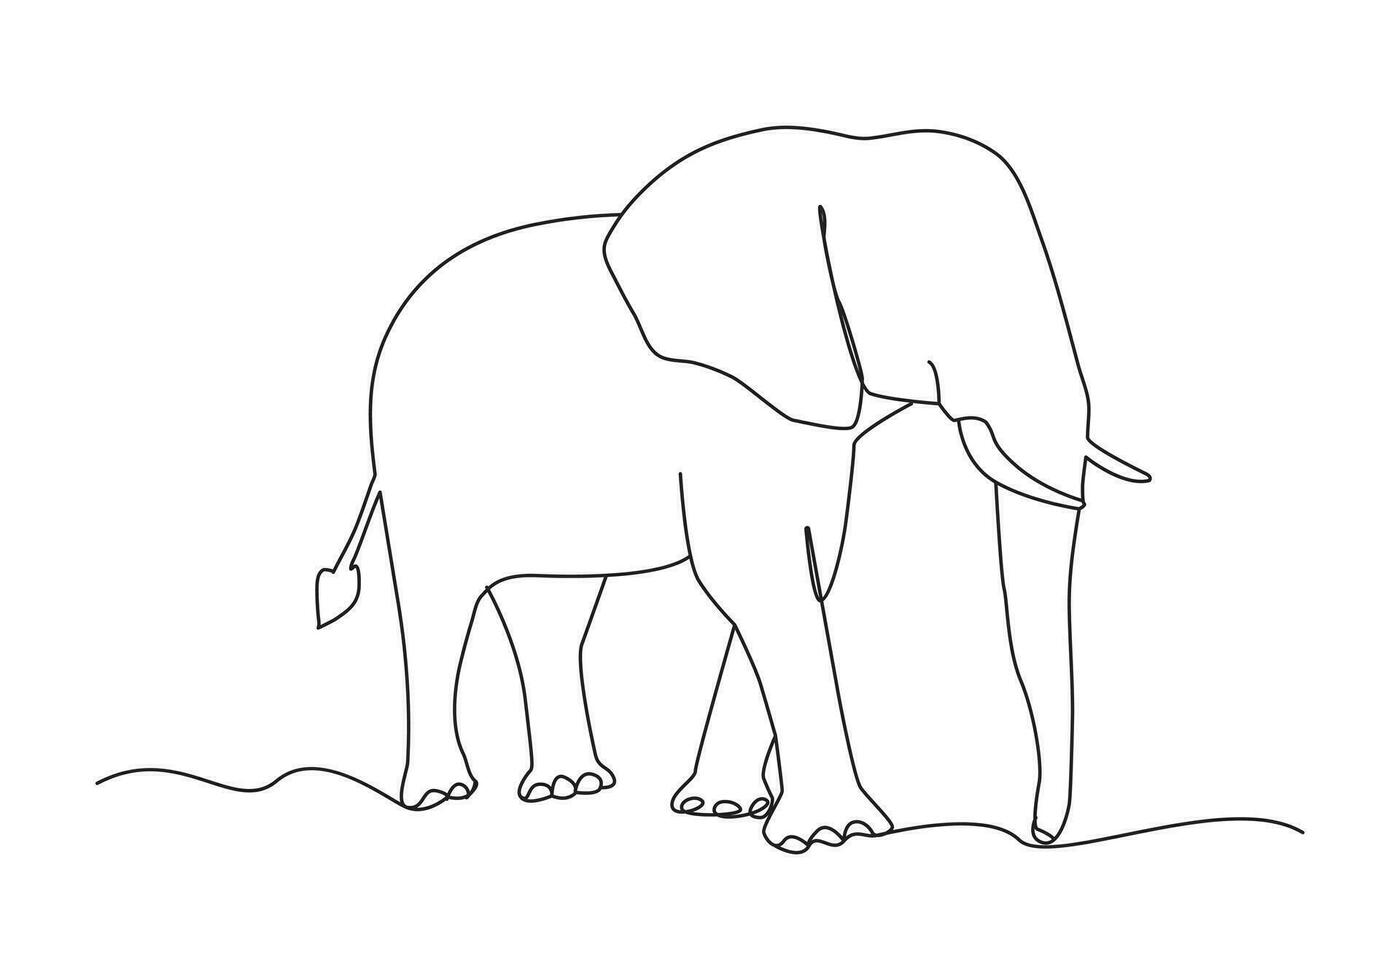 elefant i kontinuerlig linje konst teckning. minimalistisk svart linjär skiss isolerat på vit bakgrund. vektor illustration